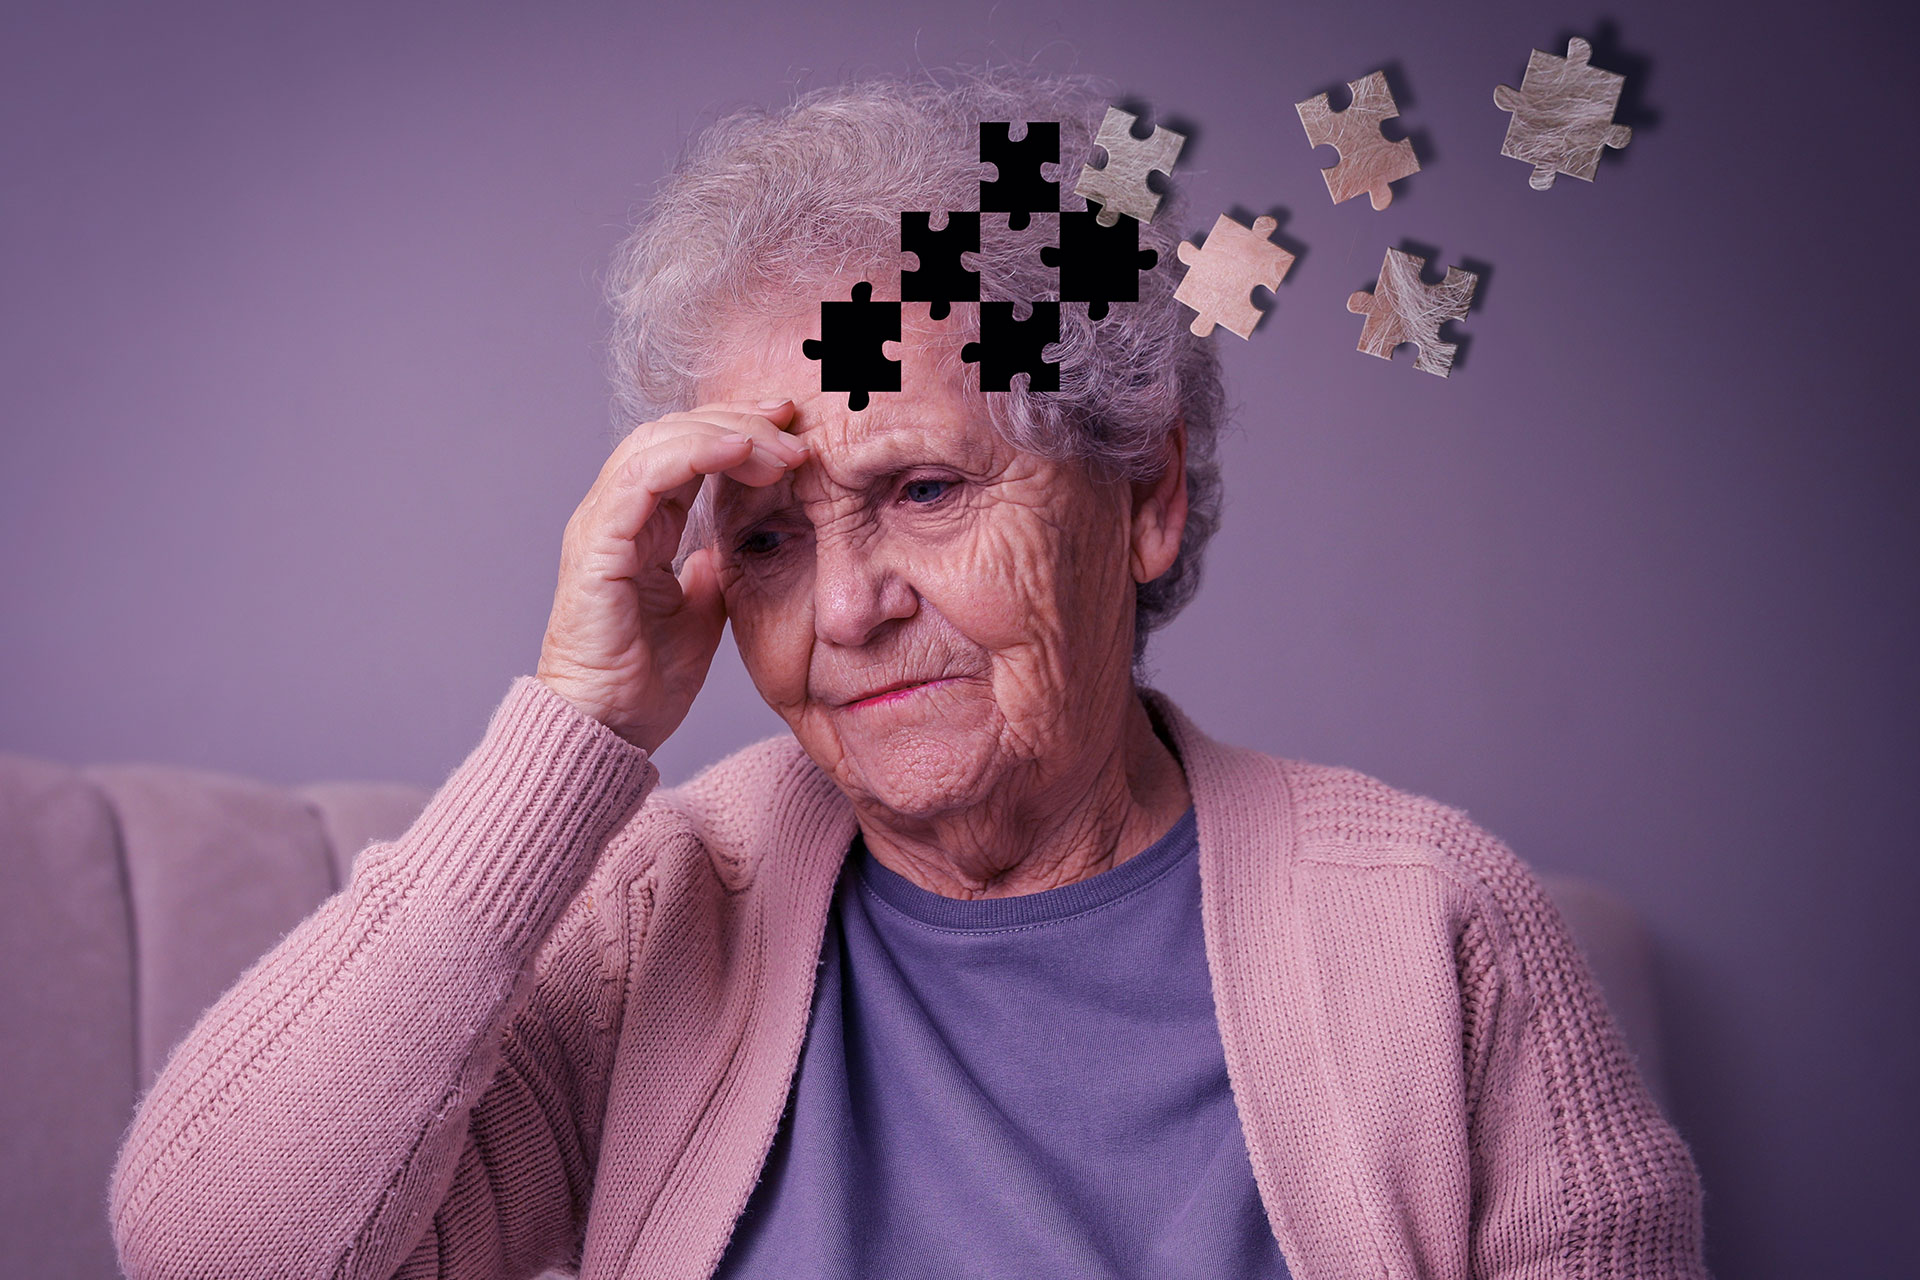 Alzheimer's awareness